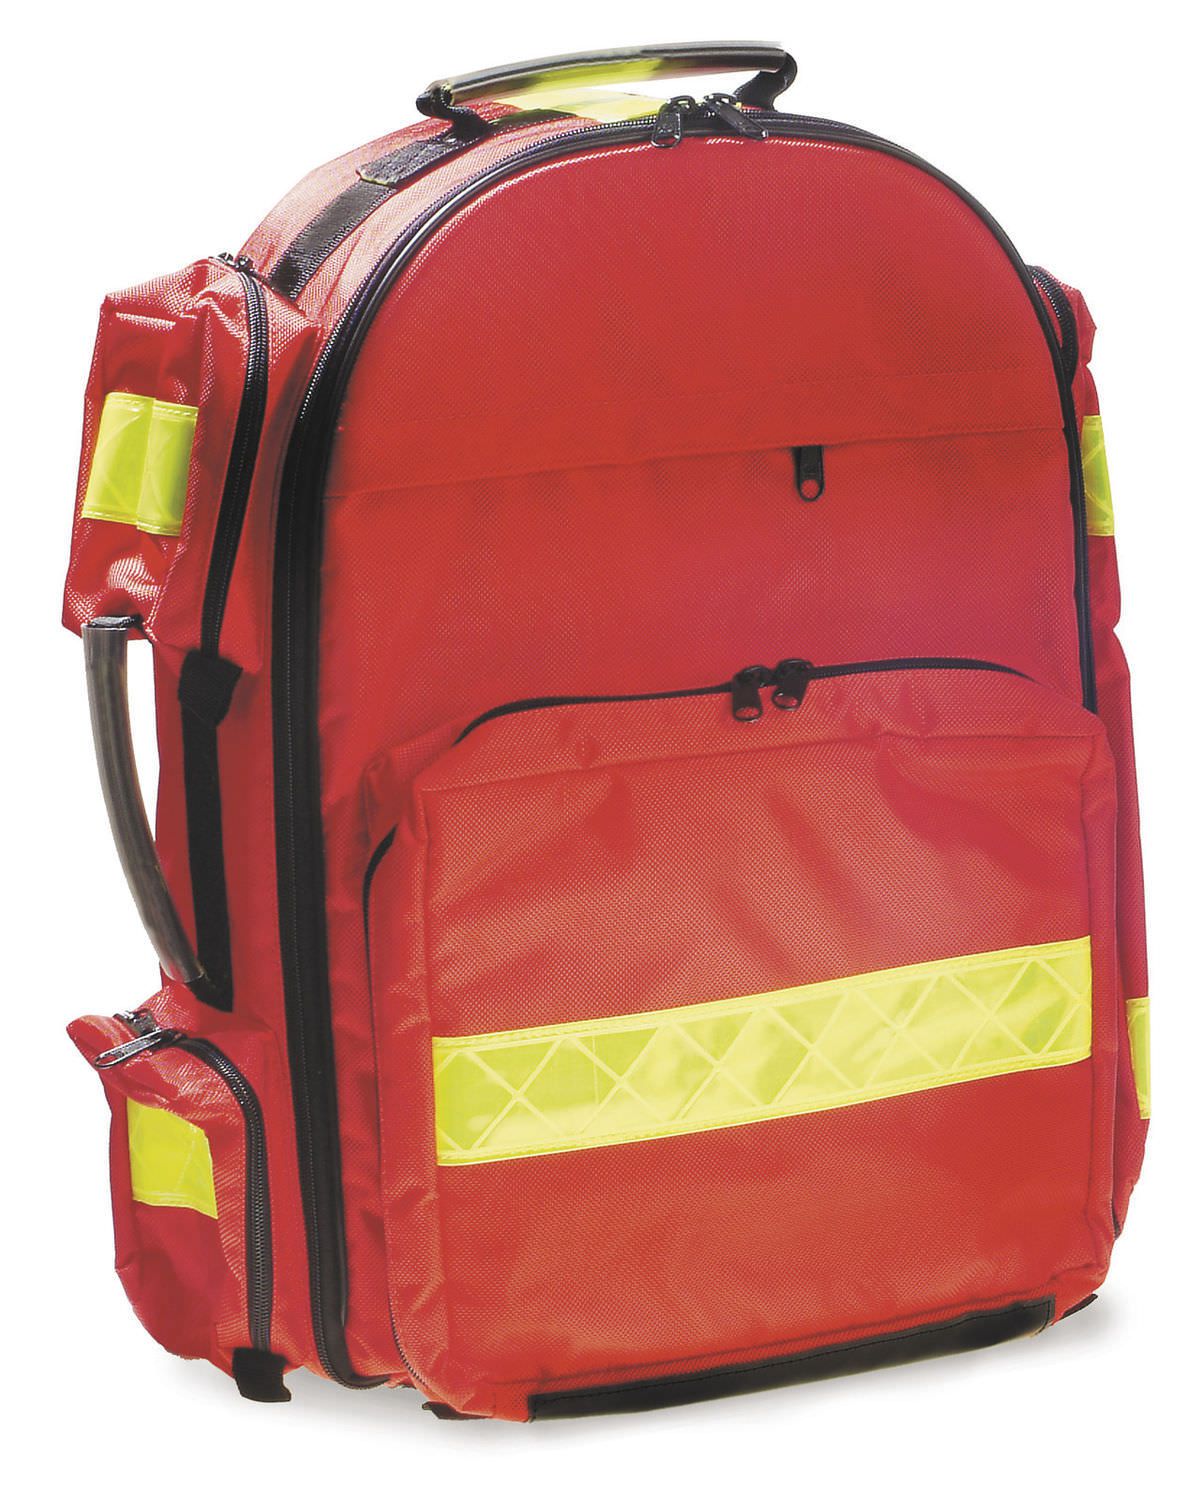 Rescue medical bag / trauma / nylon / knapsack Trauma Pack 1346 ME.BER